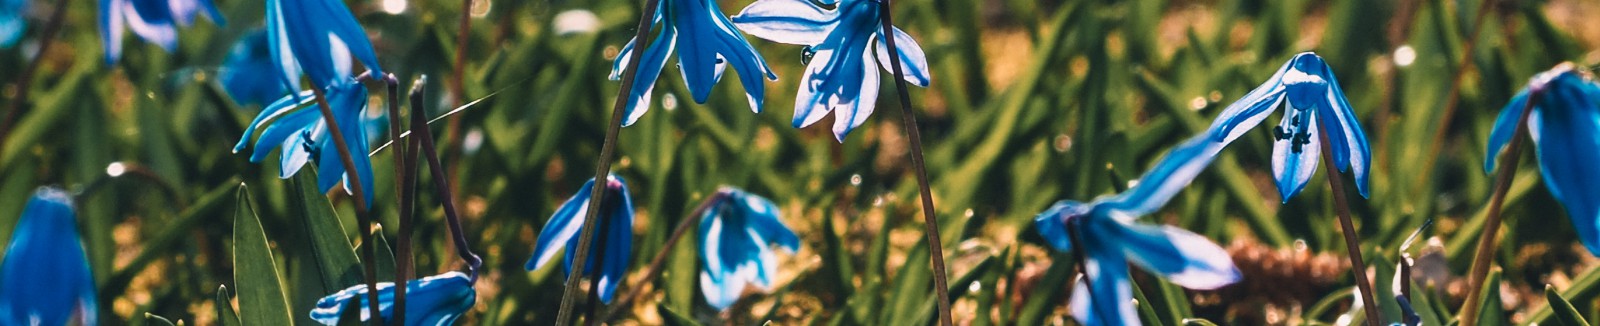 Drobne niebieskie kwiatki rosnące w trawie. 